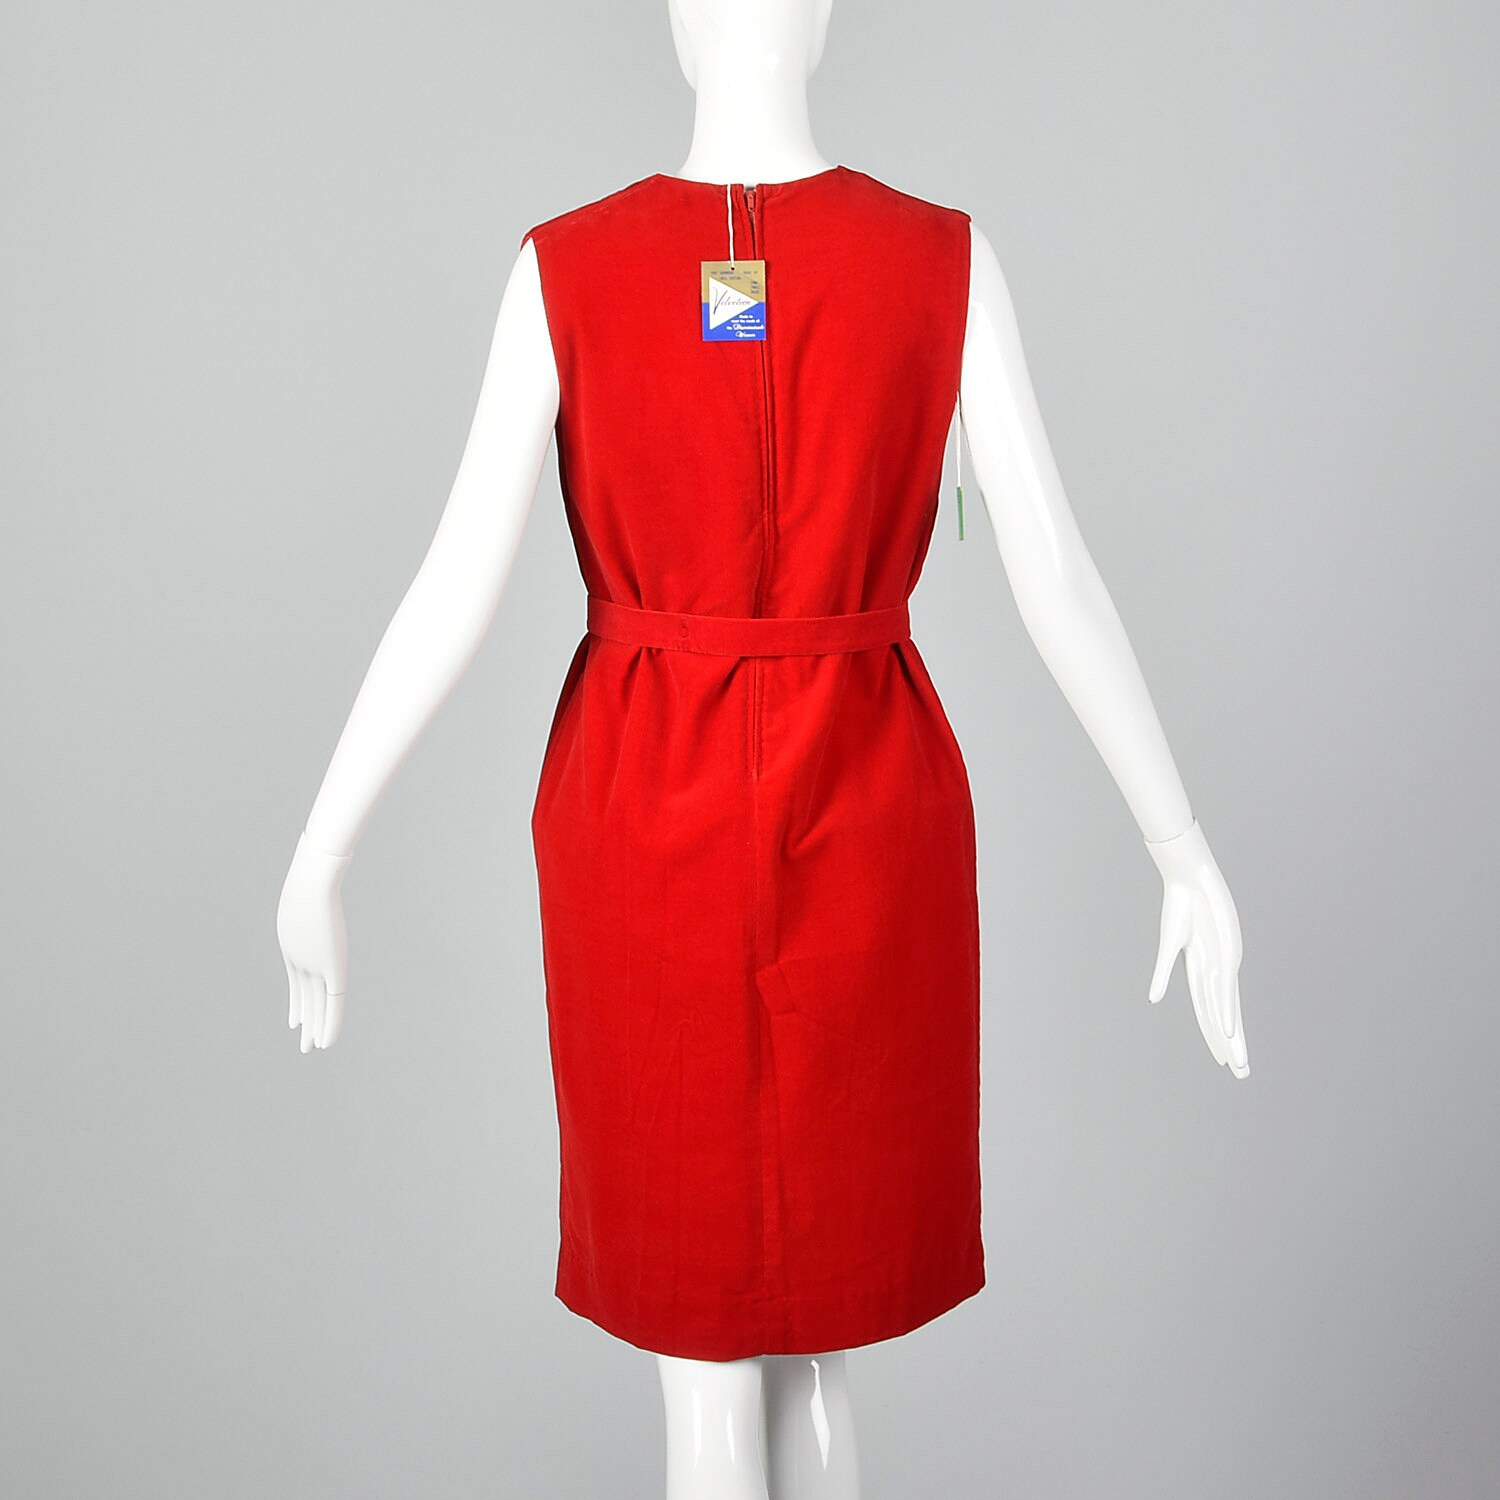 Small 1960s Dress Deadstock Velveteen Jumper Sleeveless Red - Etsy